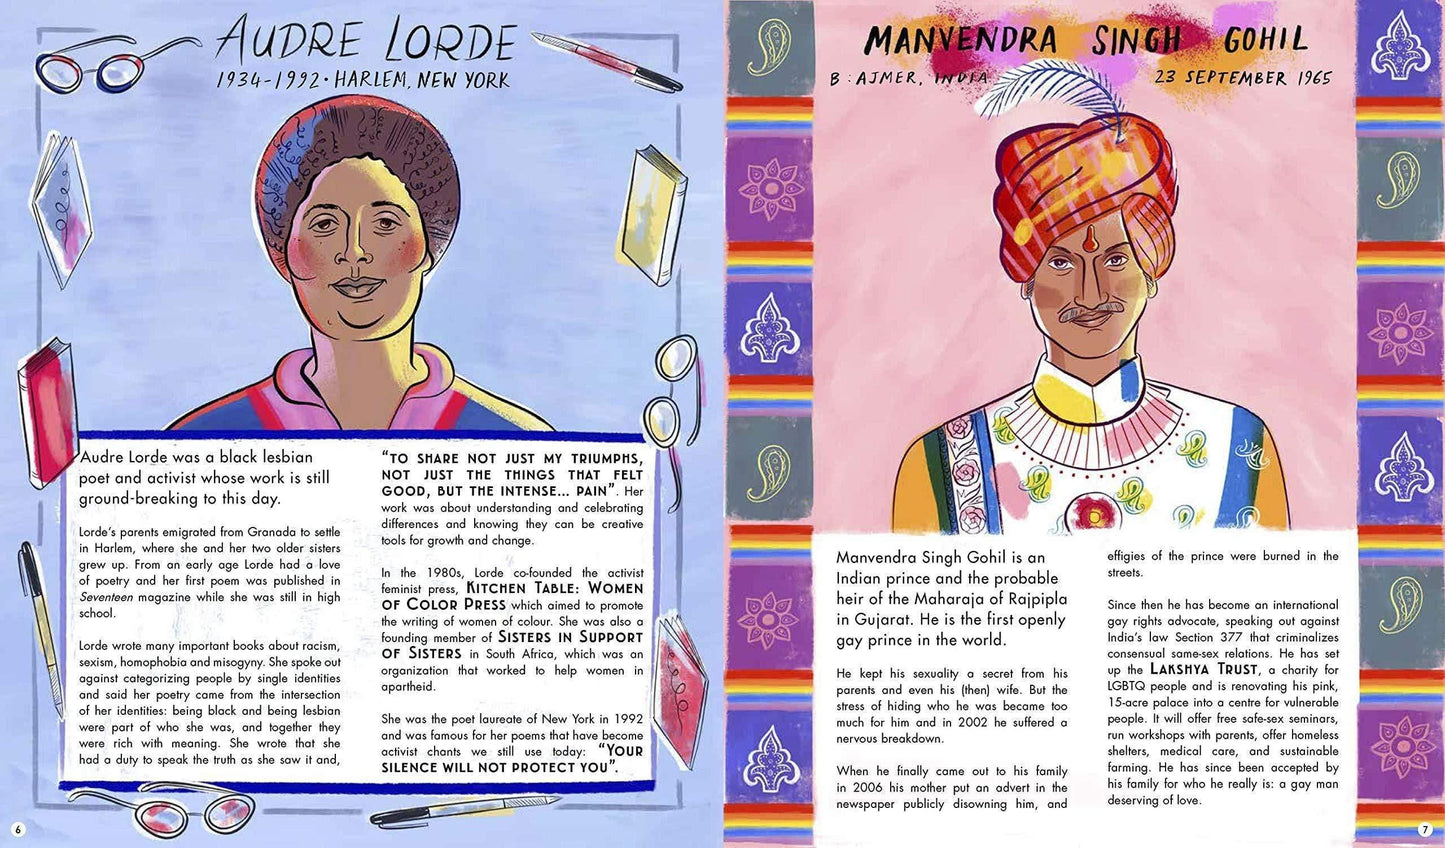 Queer Heroes by Arabelle Sicardi & Sarah Tanat-Jones - Wigwam Toys Brighton (5858253635744)